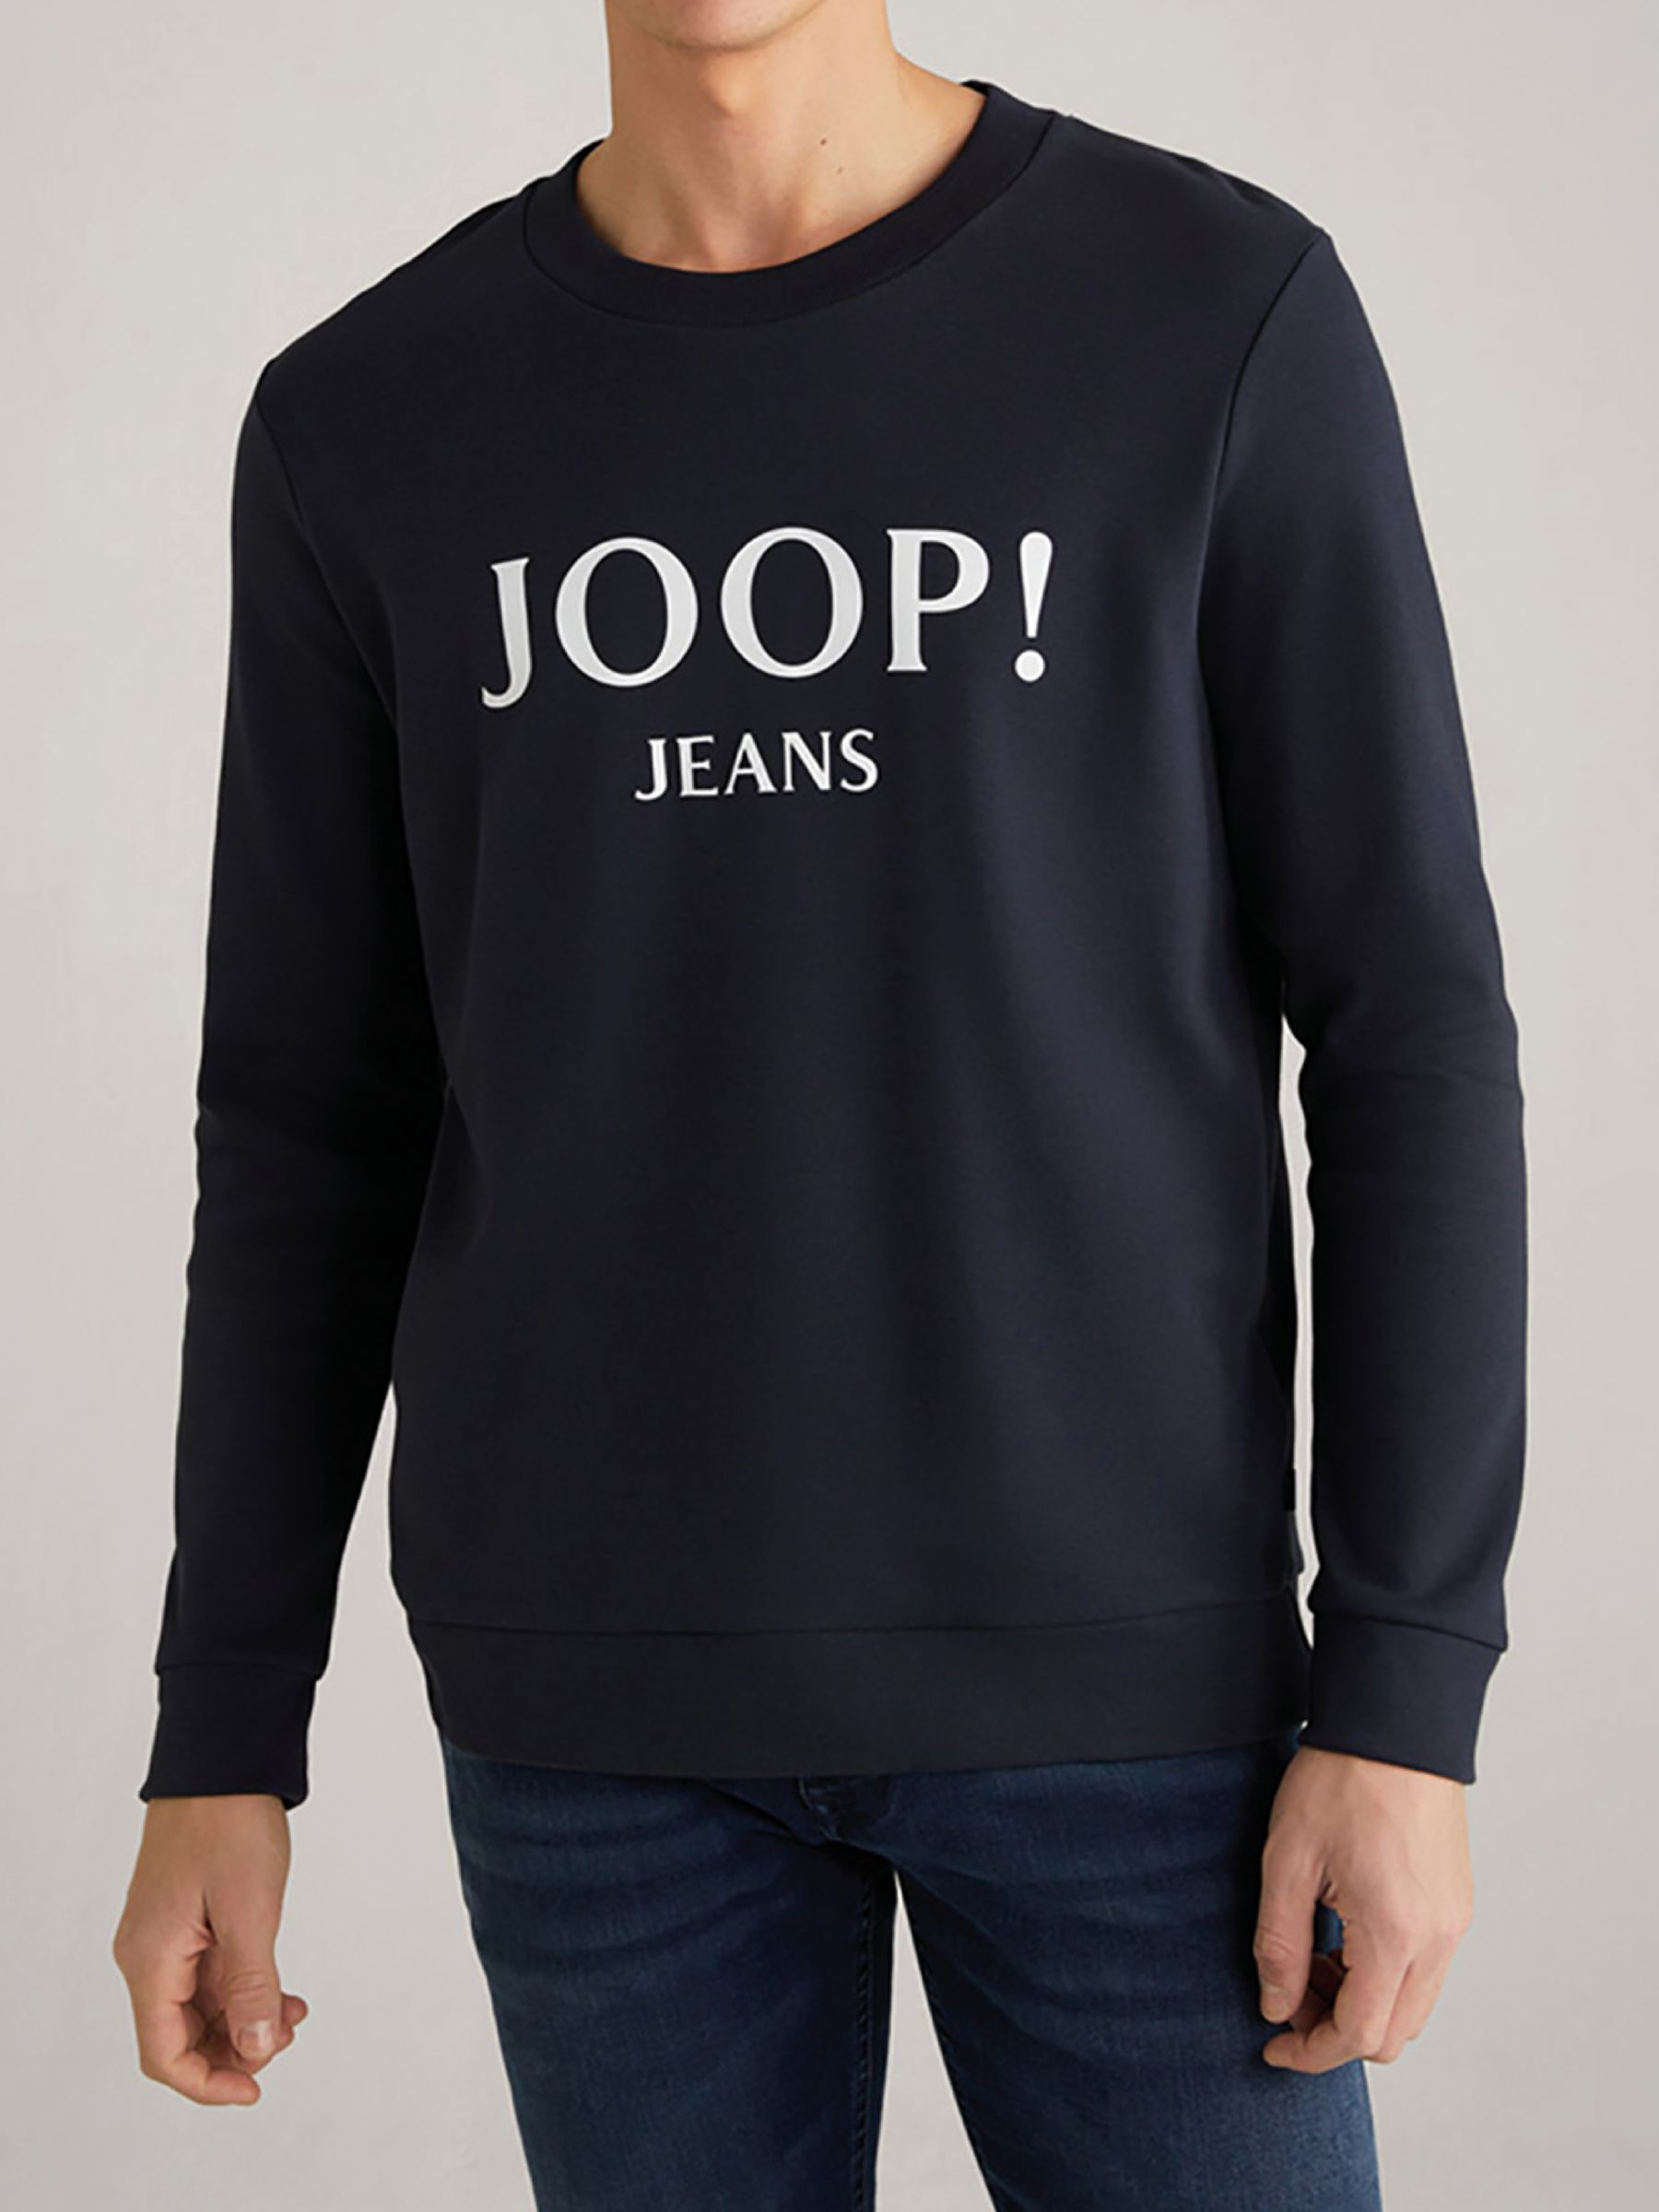 JOOP! Alfred Front Logo Sweatshirt, Dark Blue, S